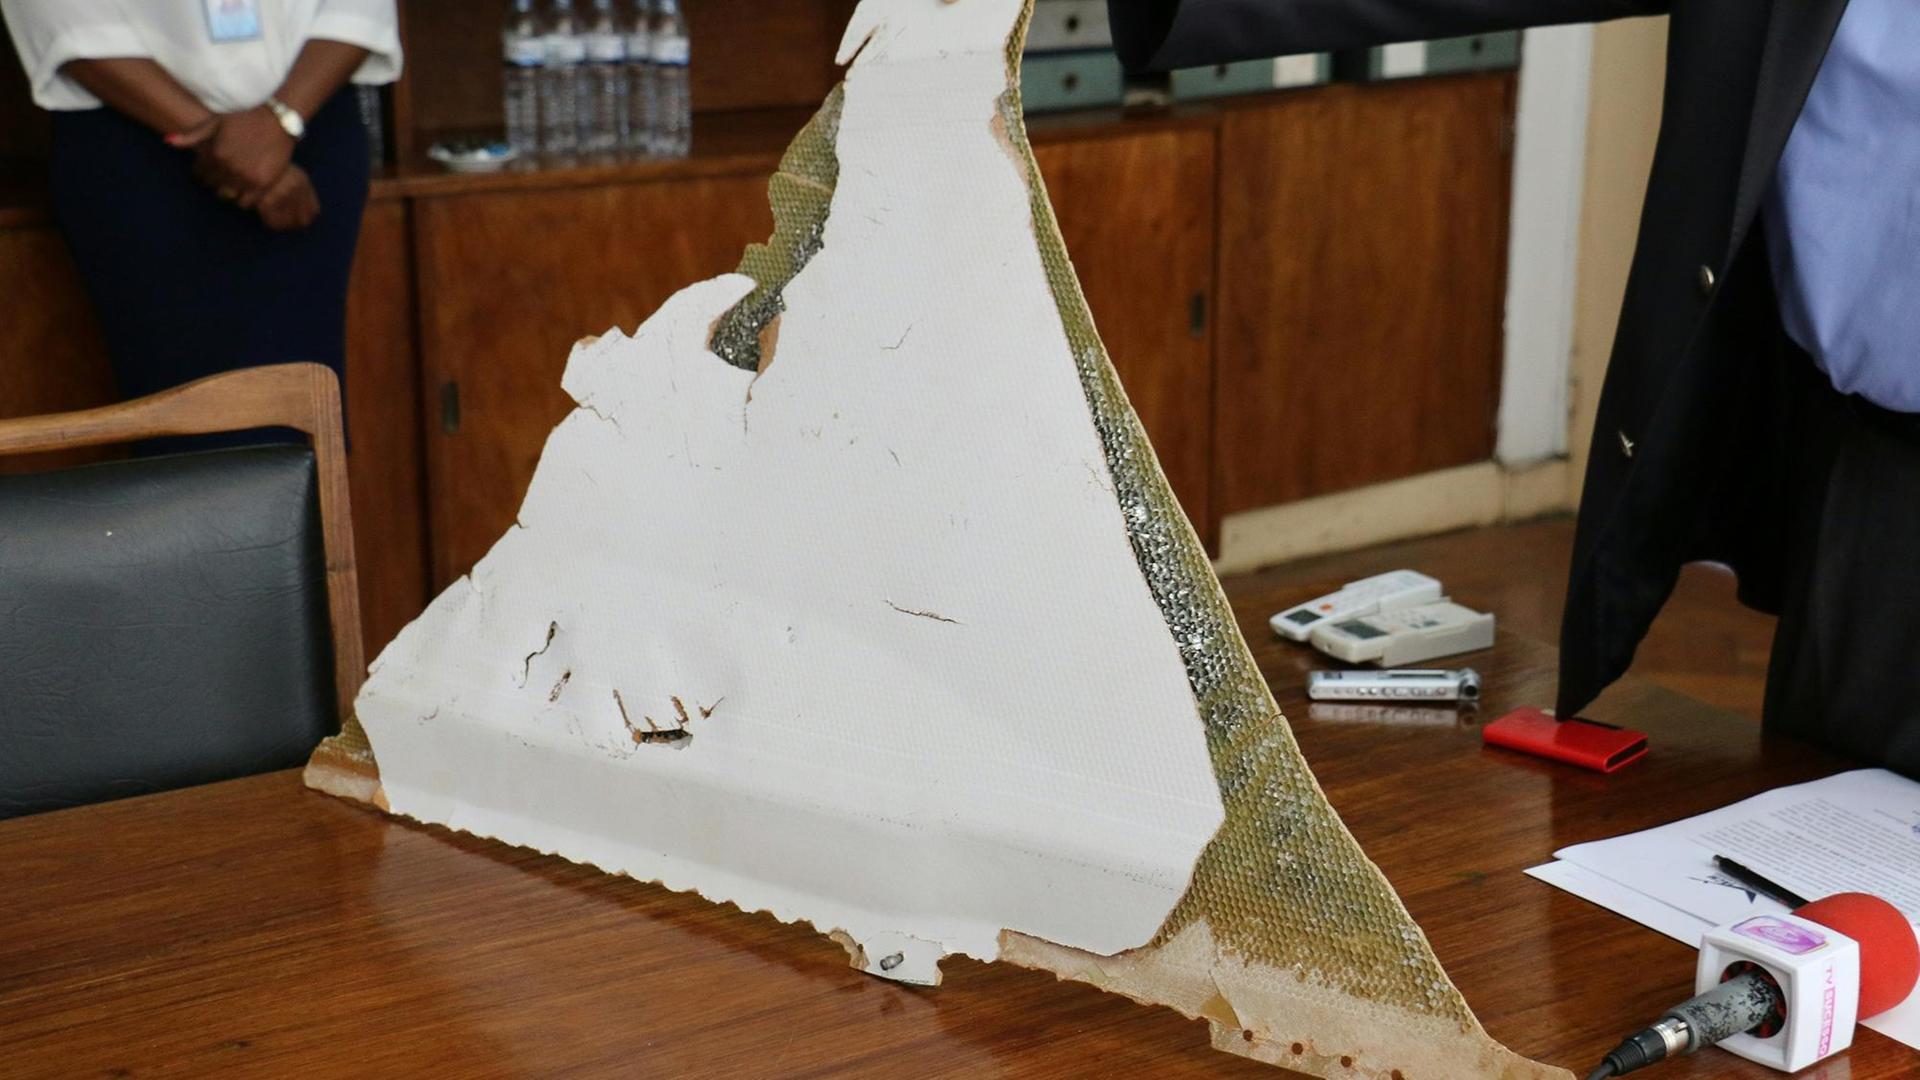 Ein Wrackteil, das möglicherweise von dem verschwundenen Flug MH370 stammt.